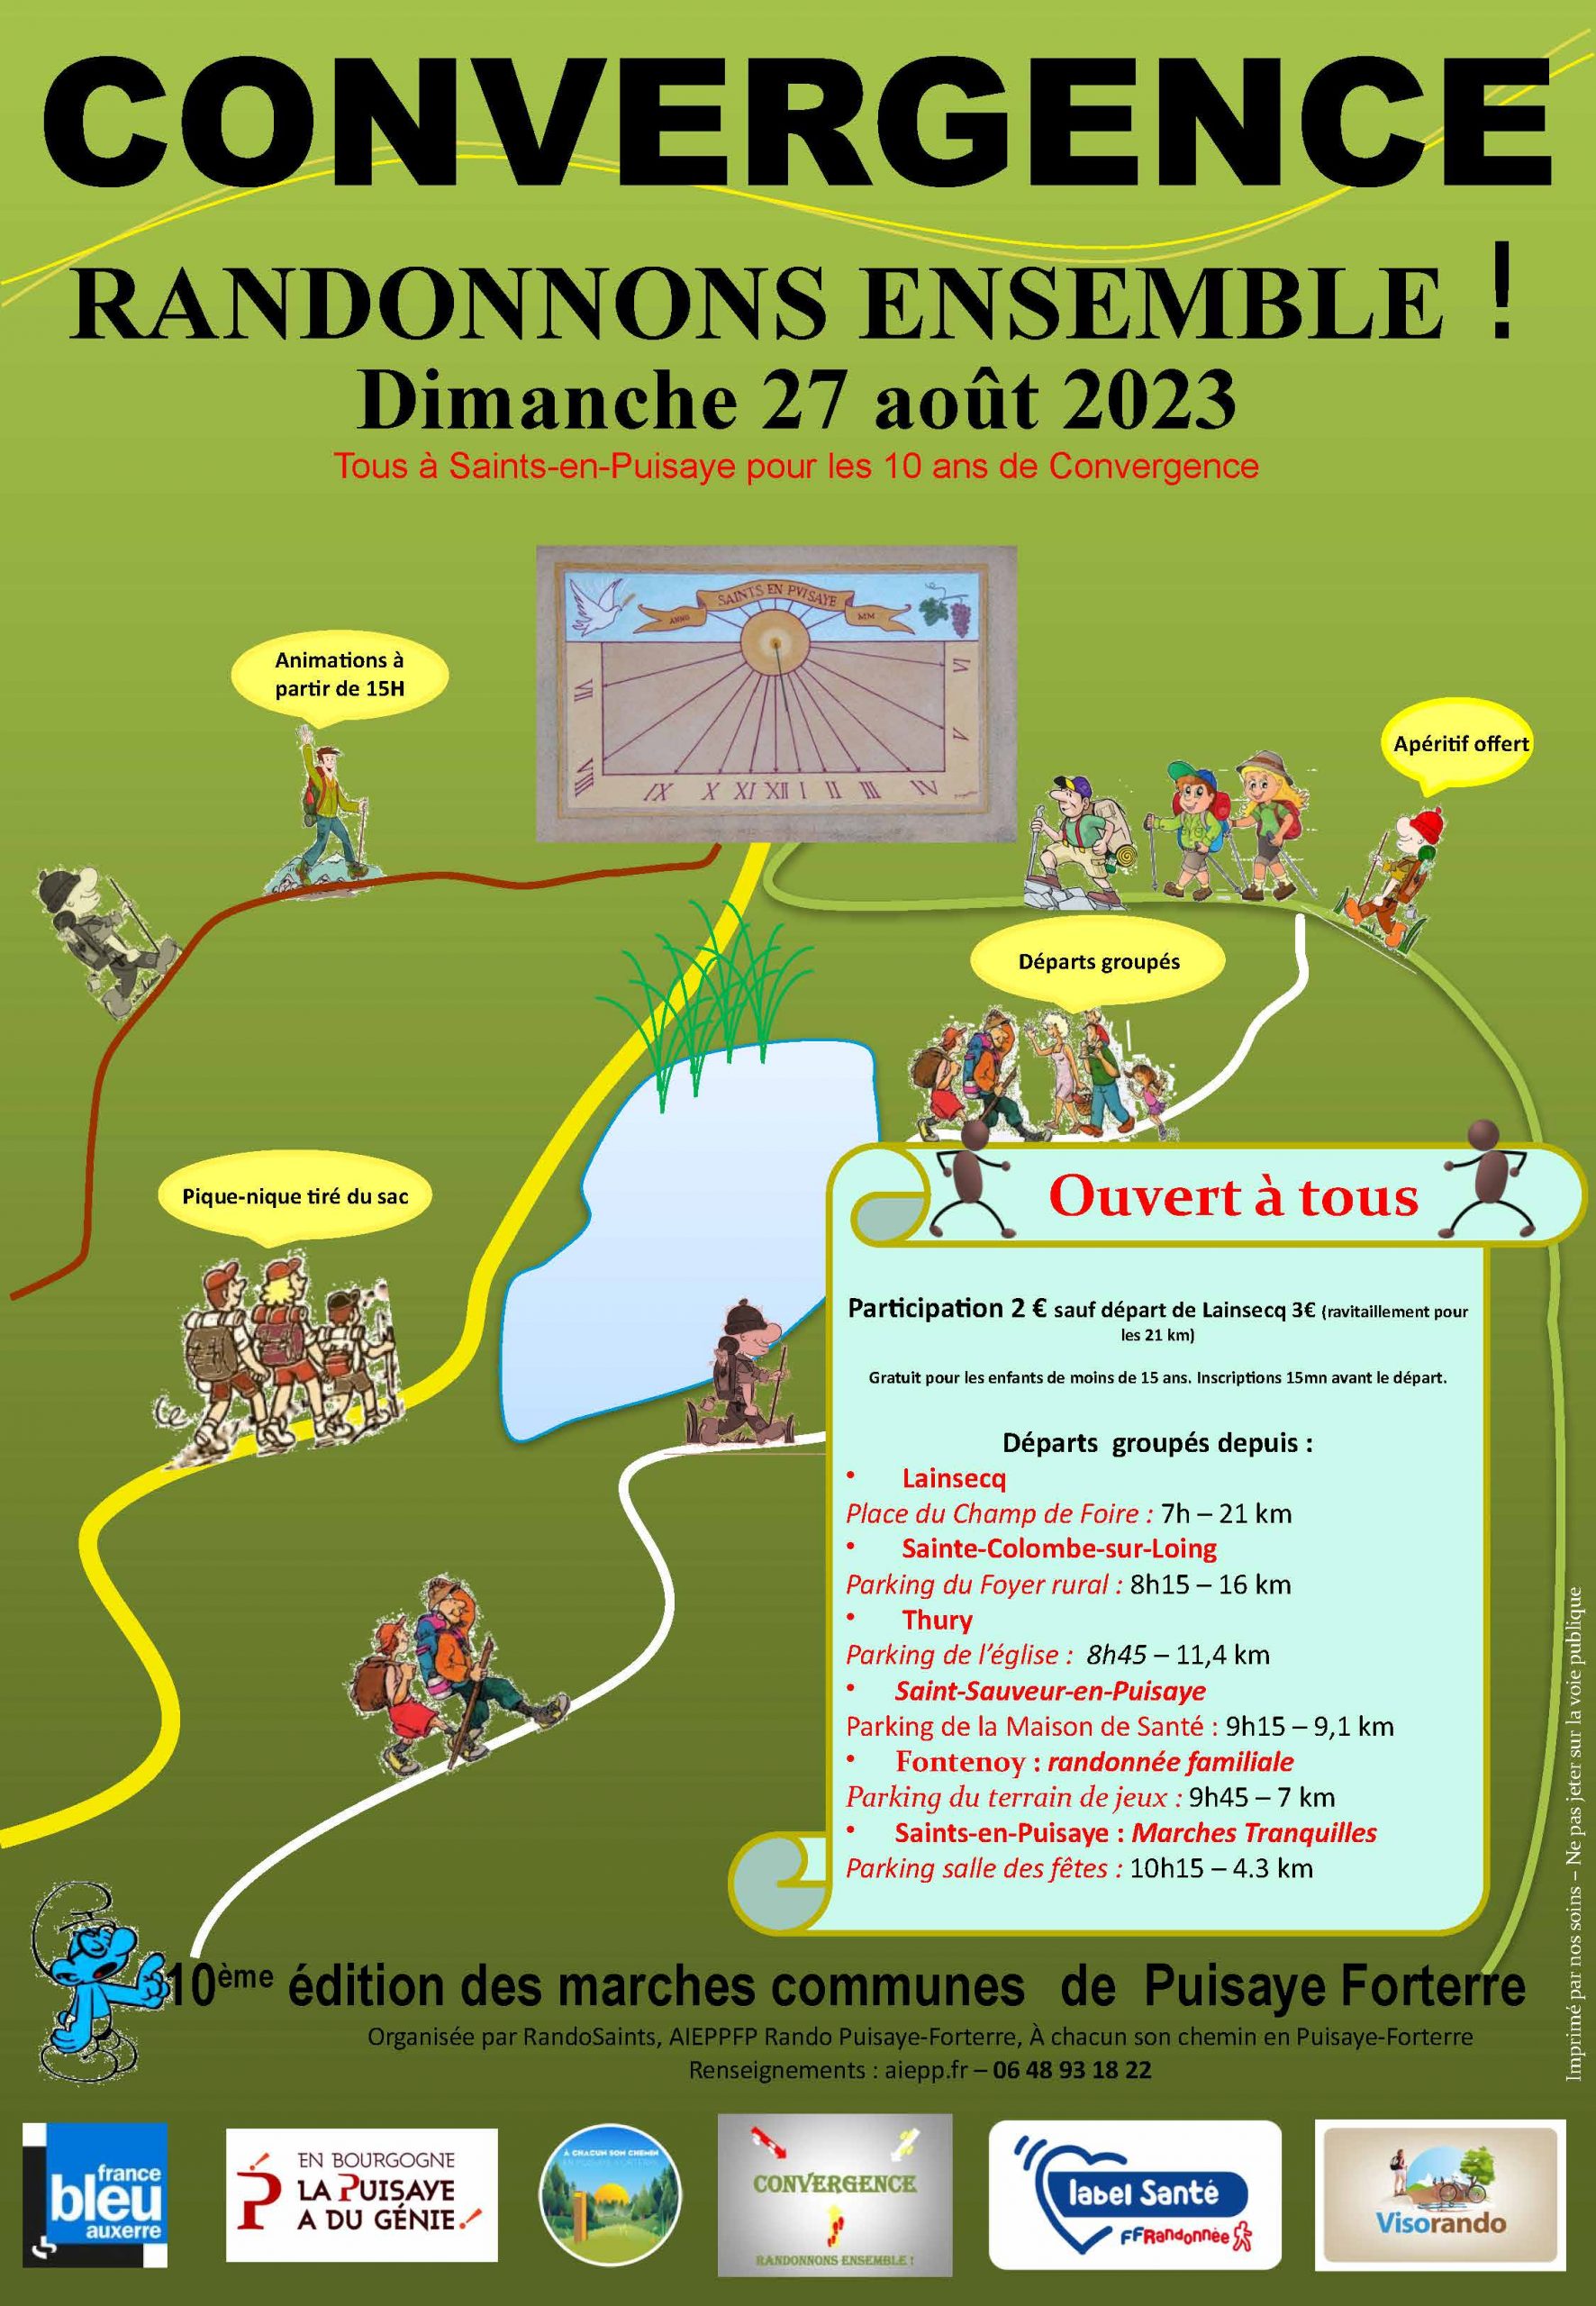 Convergence 2023 @ Parking de la Maison de Santé | Saint-Sauveur-en-Puisaye | Bourgogne-Franche-Comté | France